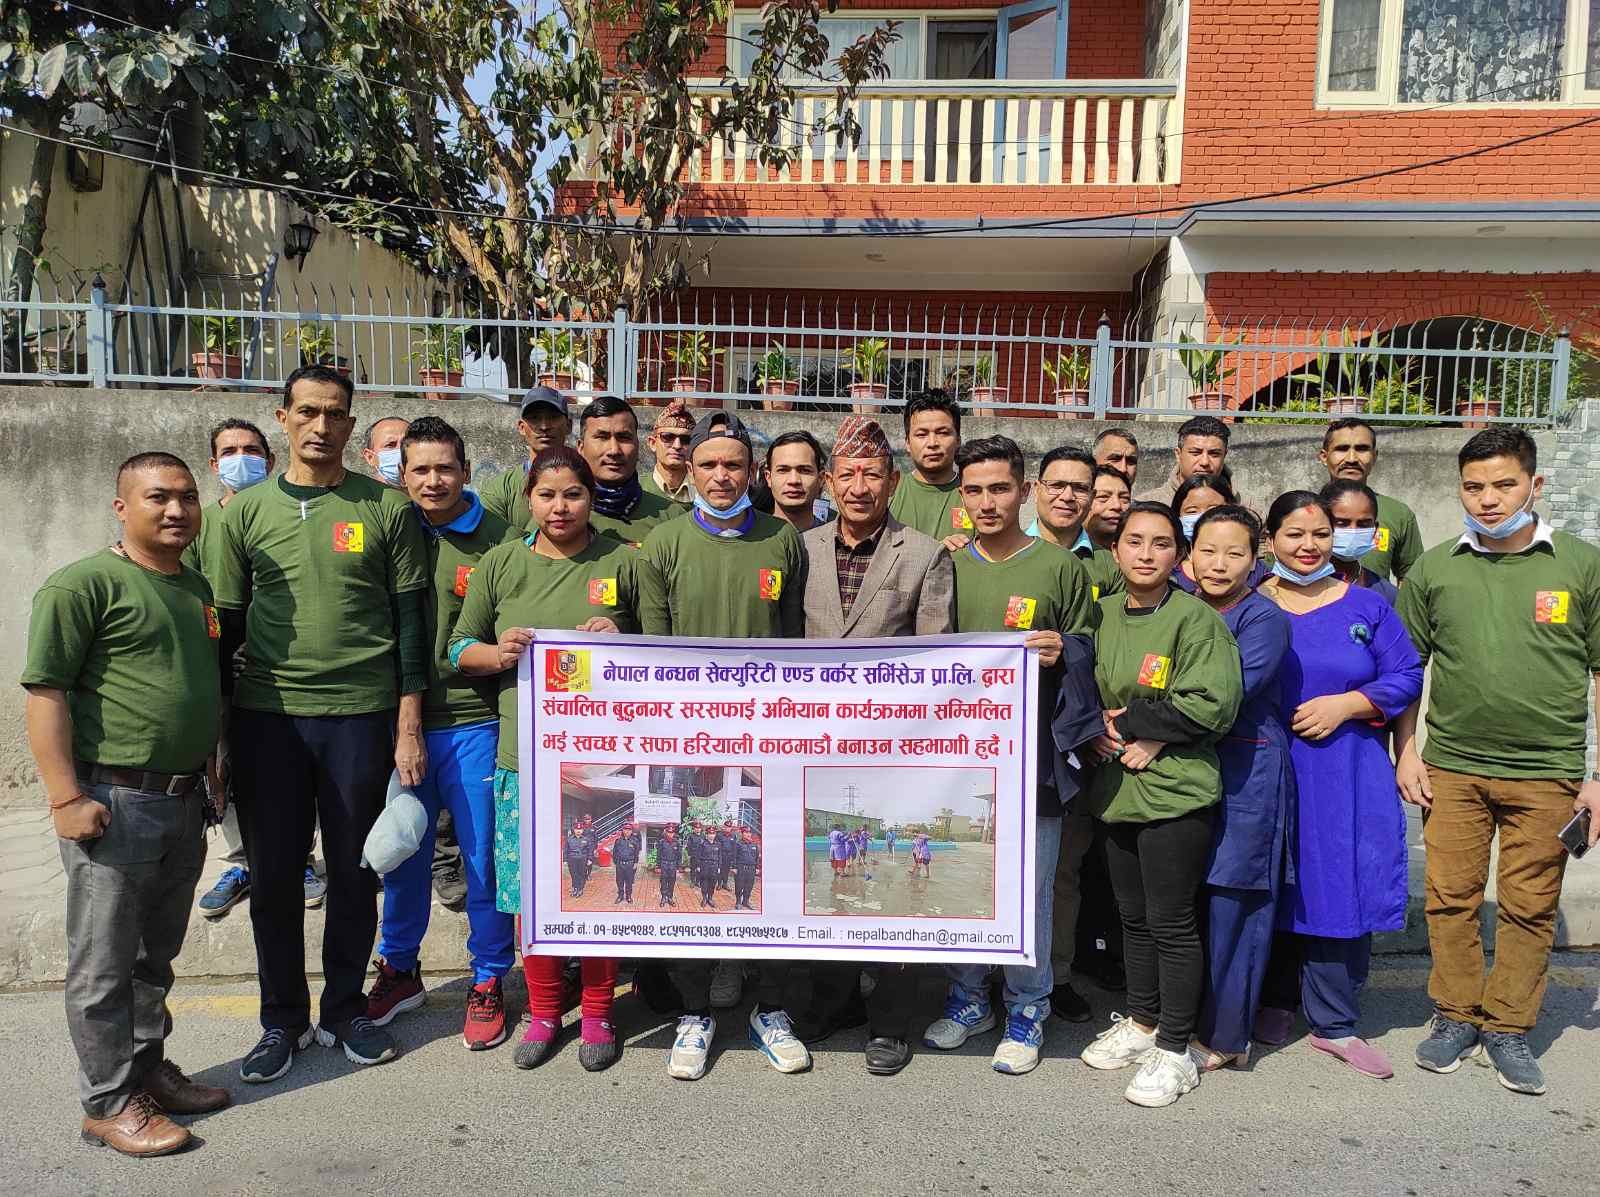 नेपाल बन्धन सेक्युरिटी एण्ड वर्कसद्धारा सरसफाई कार्यक्रम सम्पन्न